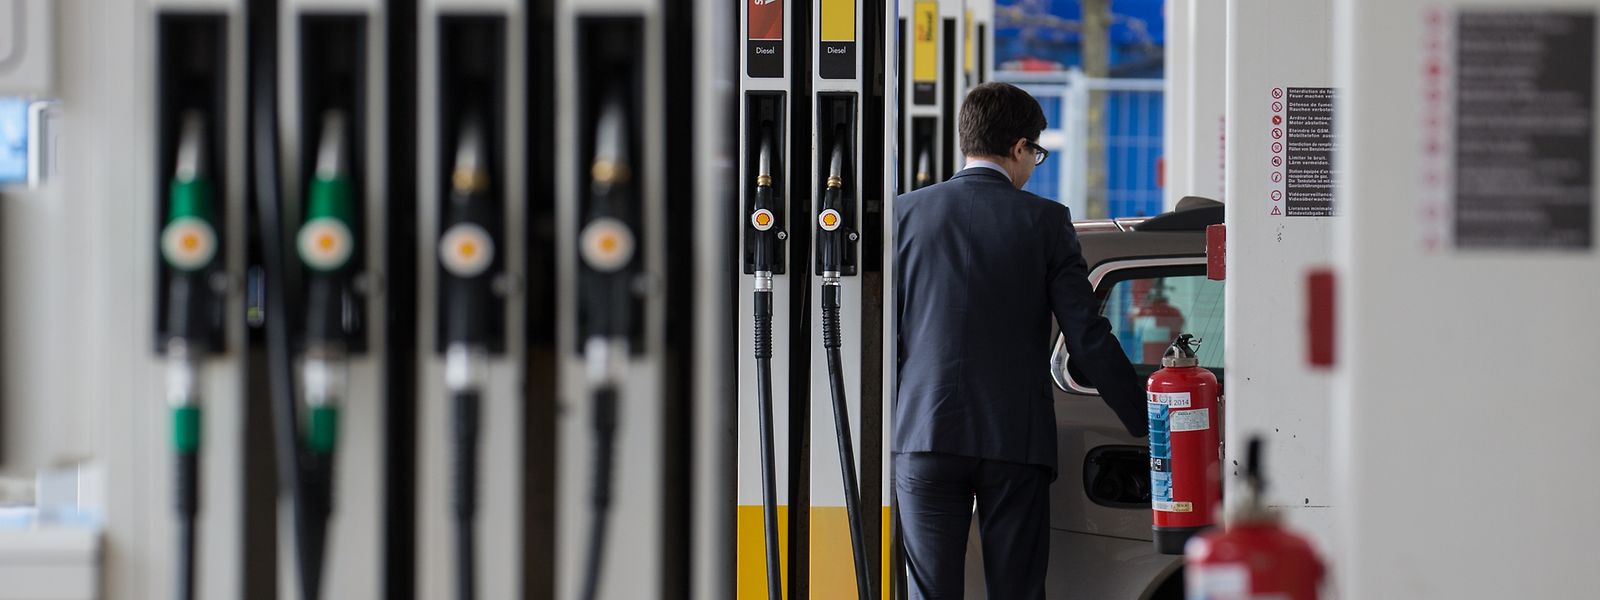 Der Verkauf der klassischen Treibstoffe Benzin und Diesel stieg im vergangenen Jahr in Luxemburg um 3,6 Prozent.